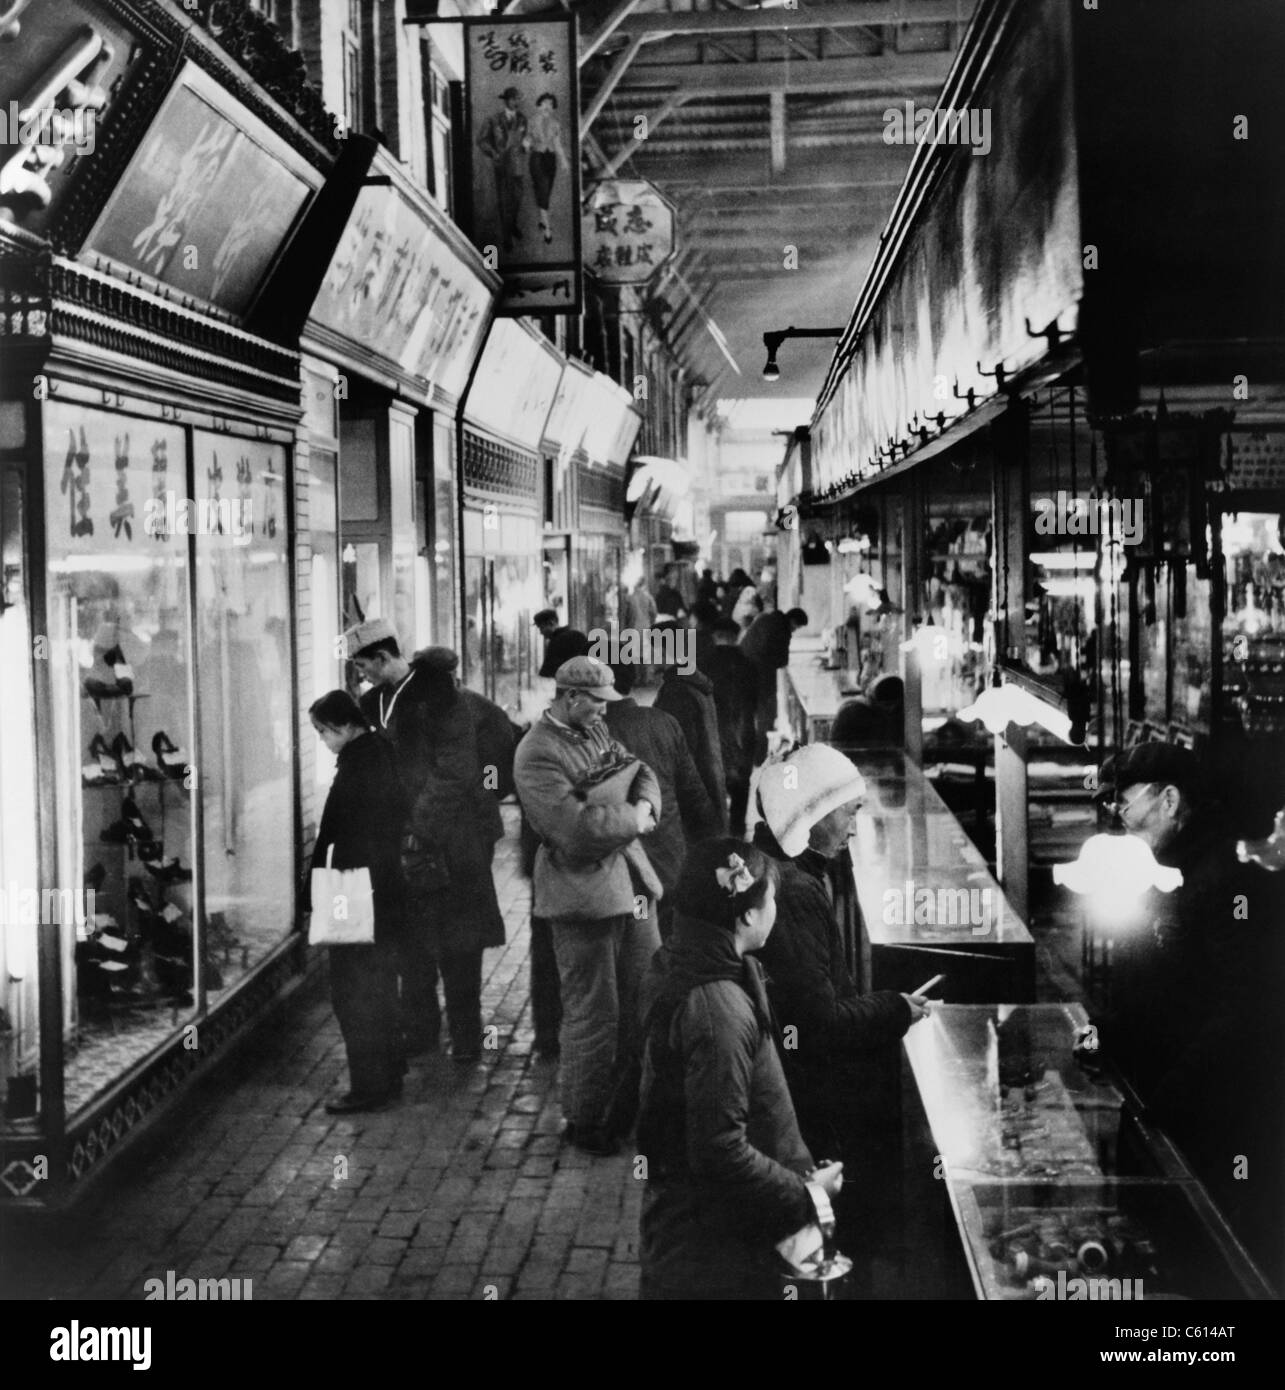 Les acheteurs chinois des biens de consommation à l'œil les compteurs et les fenêtres d'affichage à l'Tung un bazar à Beijing en Chine. 1964. (BSLOC___100 18 2010) Banque D'Images